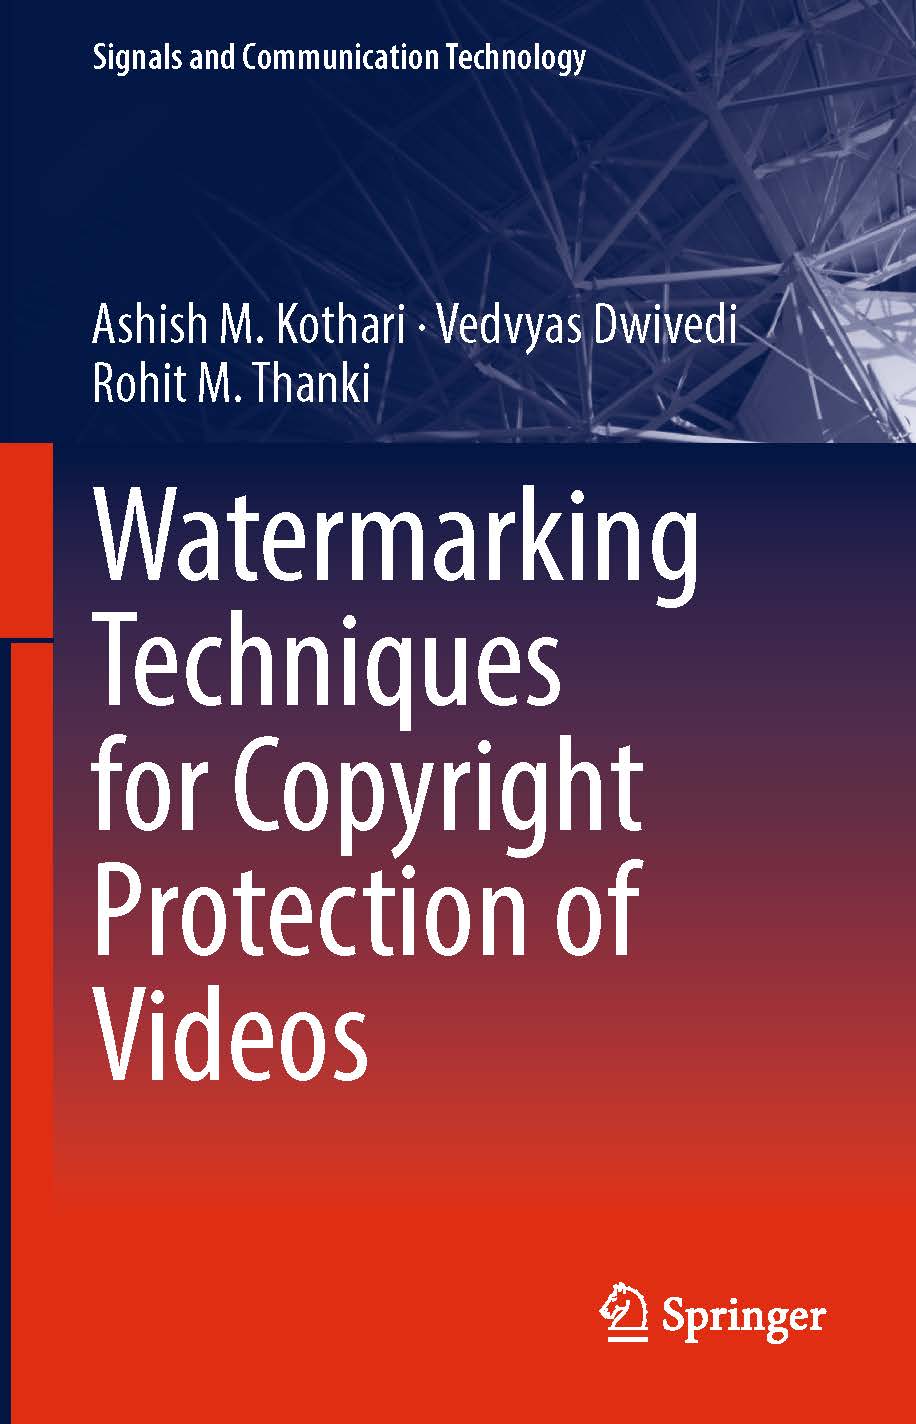 页面提取自－2019_Book_Watermarking Techniques for Copyright Protection of Videos.jpg